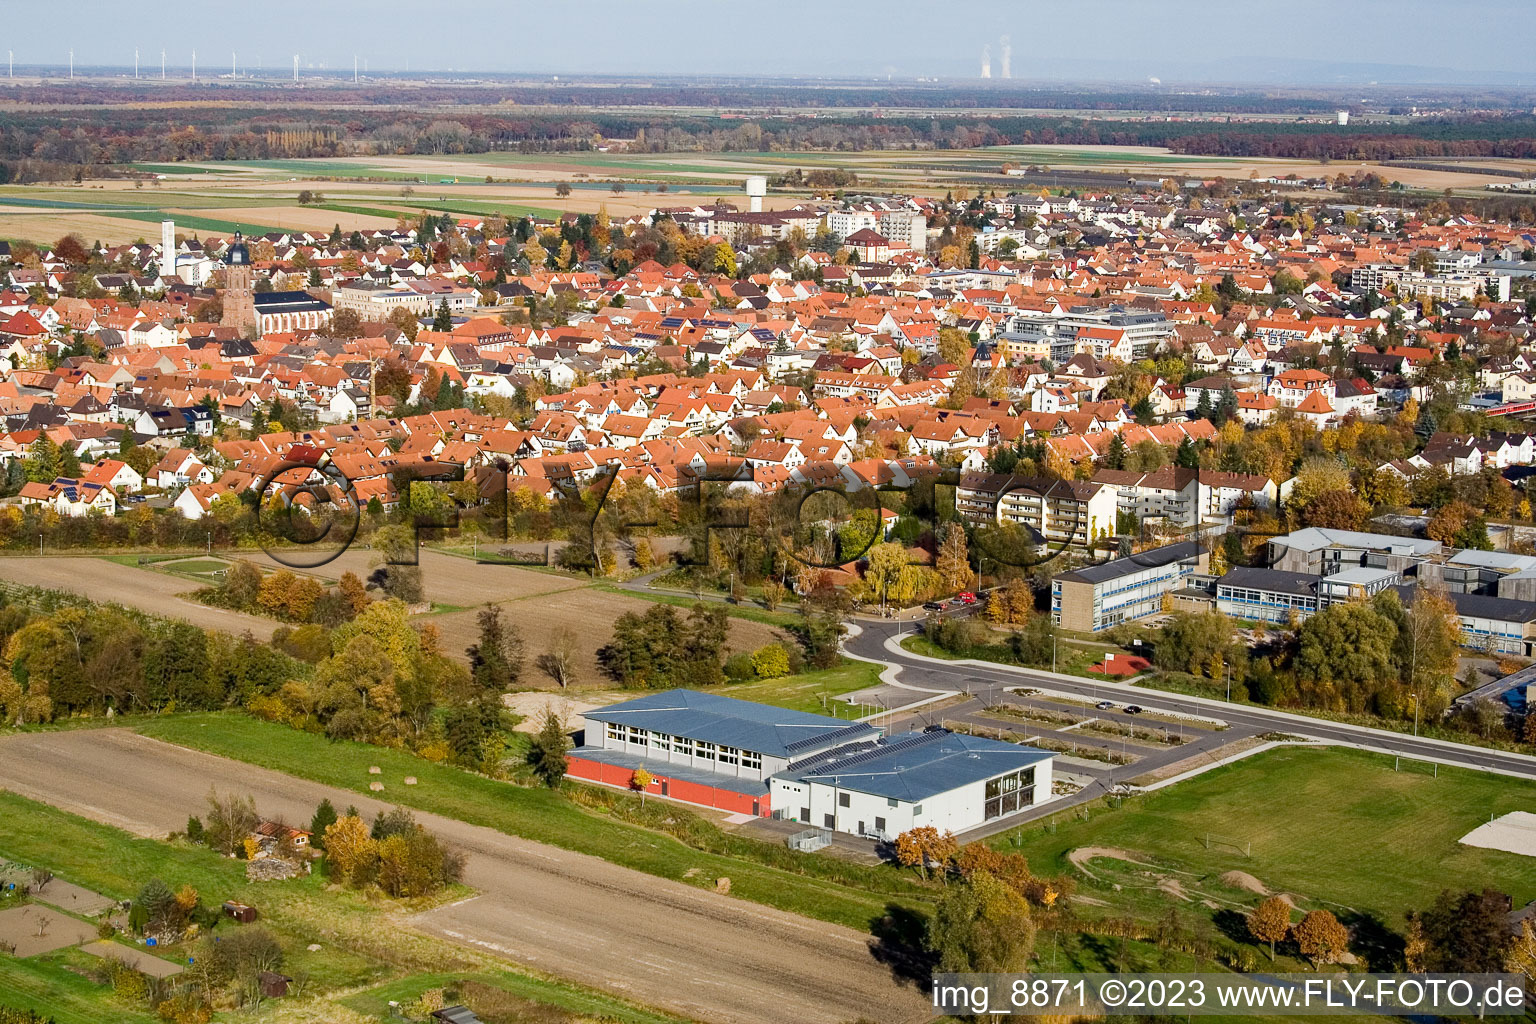 Bienwaldhalle à Kandel dans le département Rhénanie-Palatinat, Allemagne du point de vue du drone